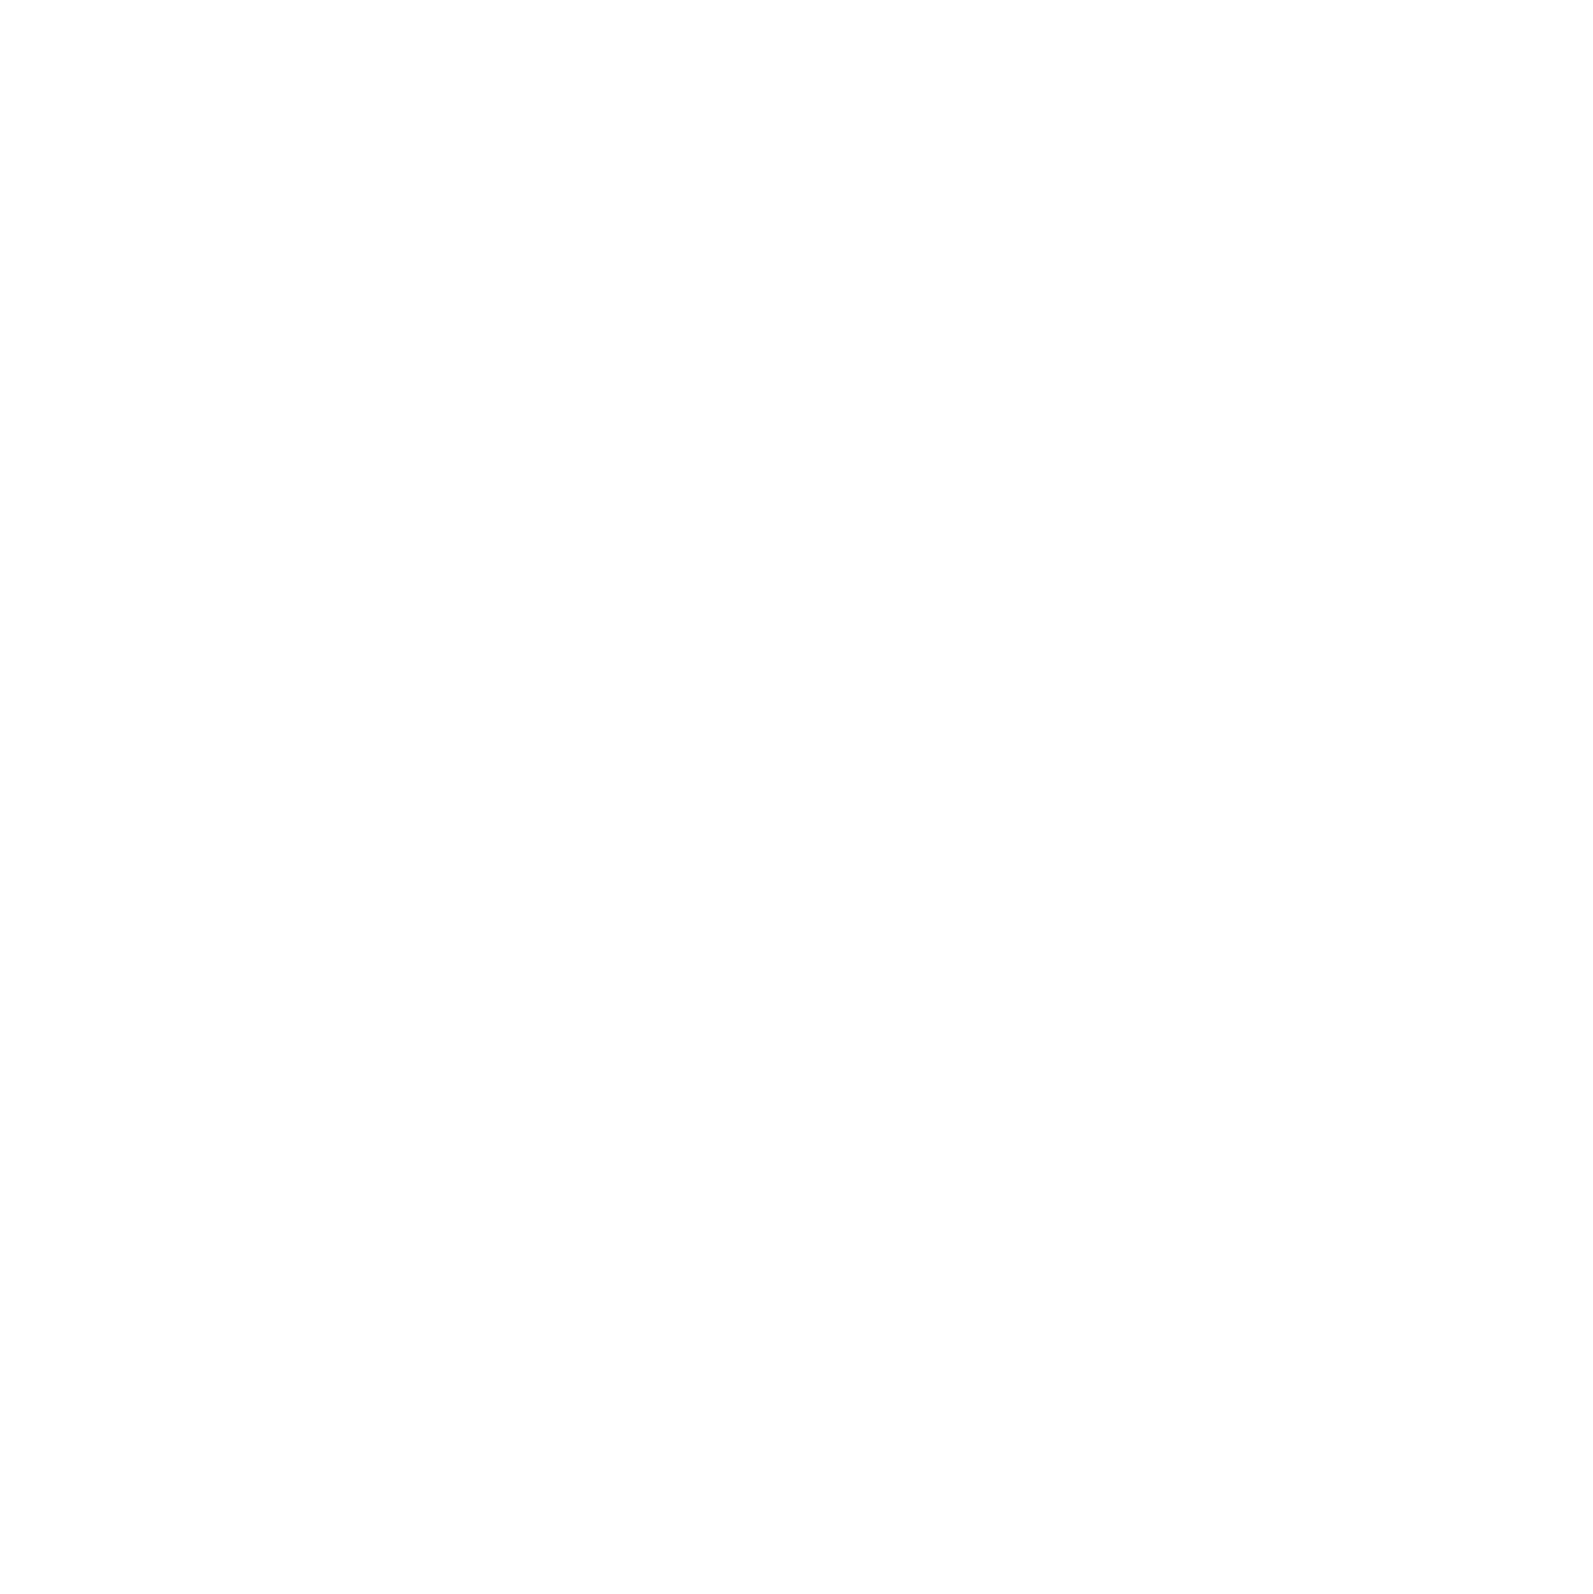 Infinera logo for dark backgrounds (transparent PNG)